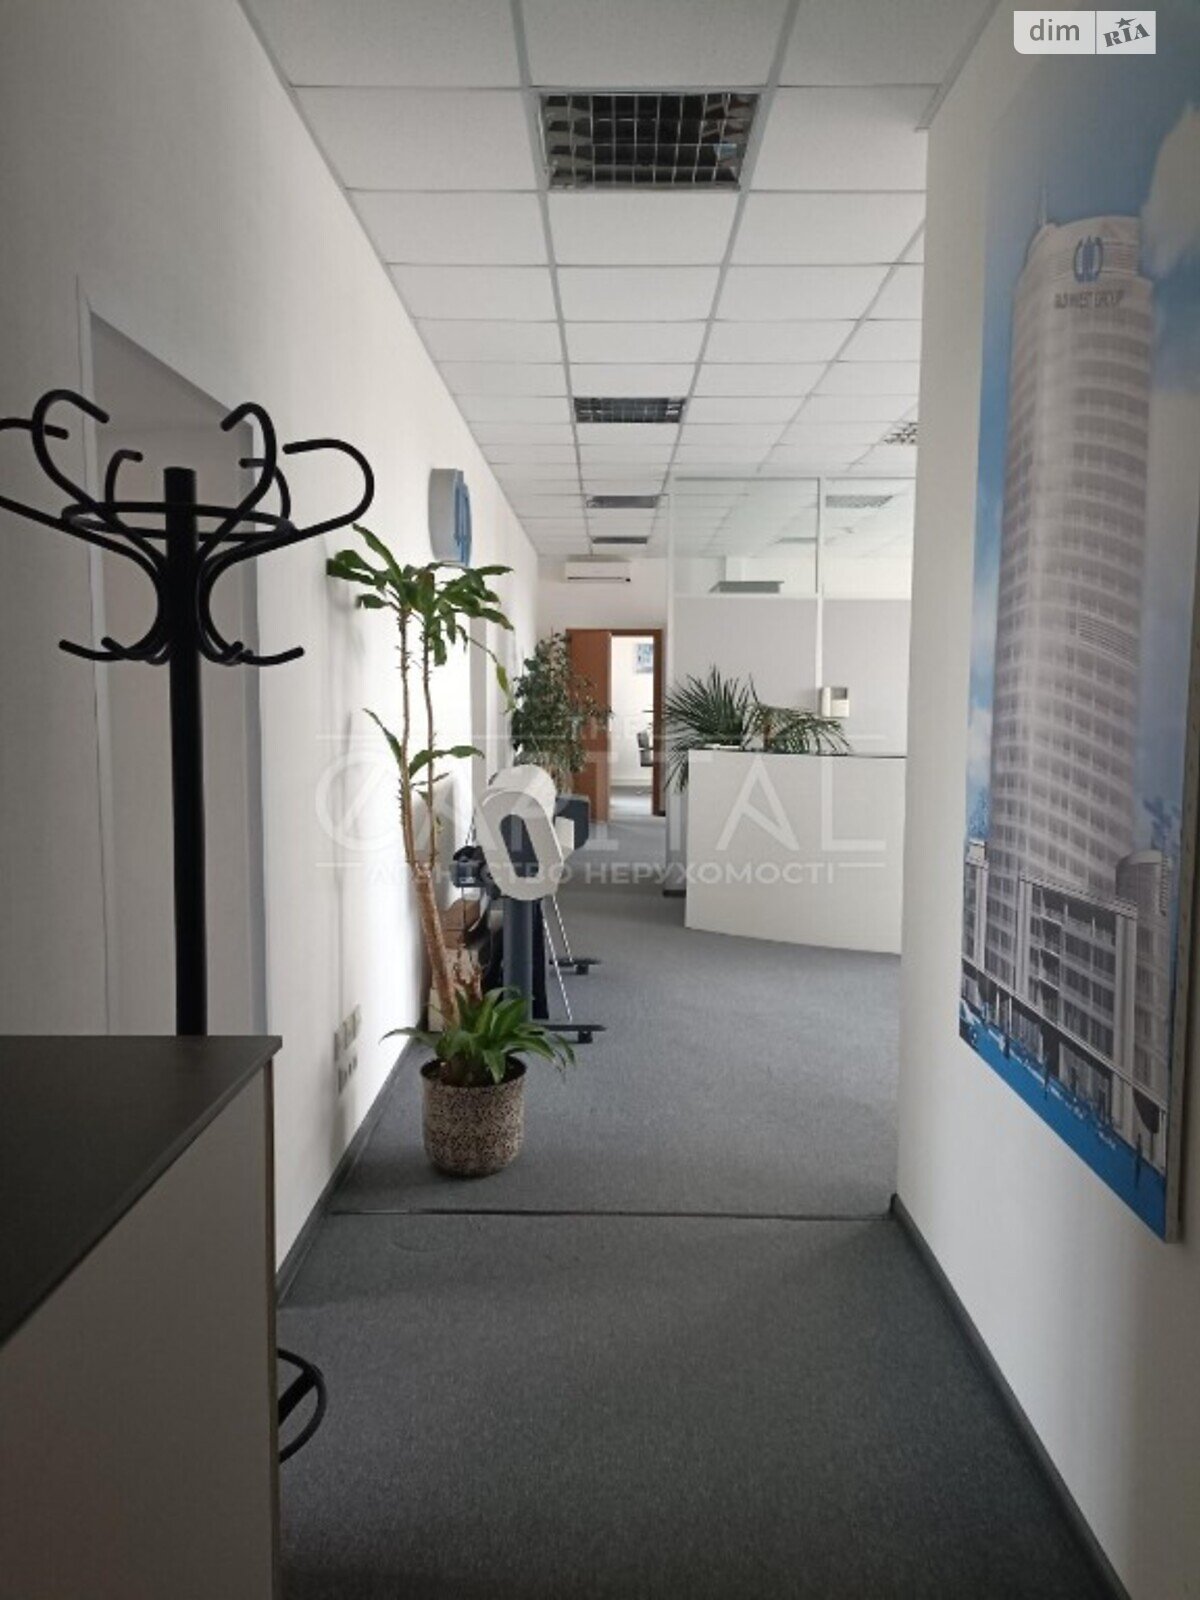 Аренда офисного помещения в Киеве, Бехтеревский переулок 1, помещений - 6, этаж - 1 фото 1